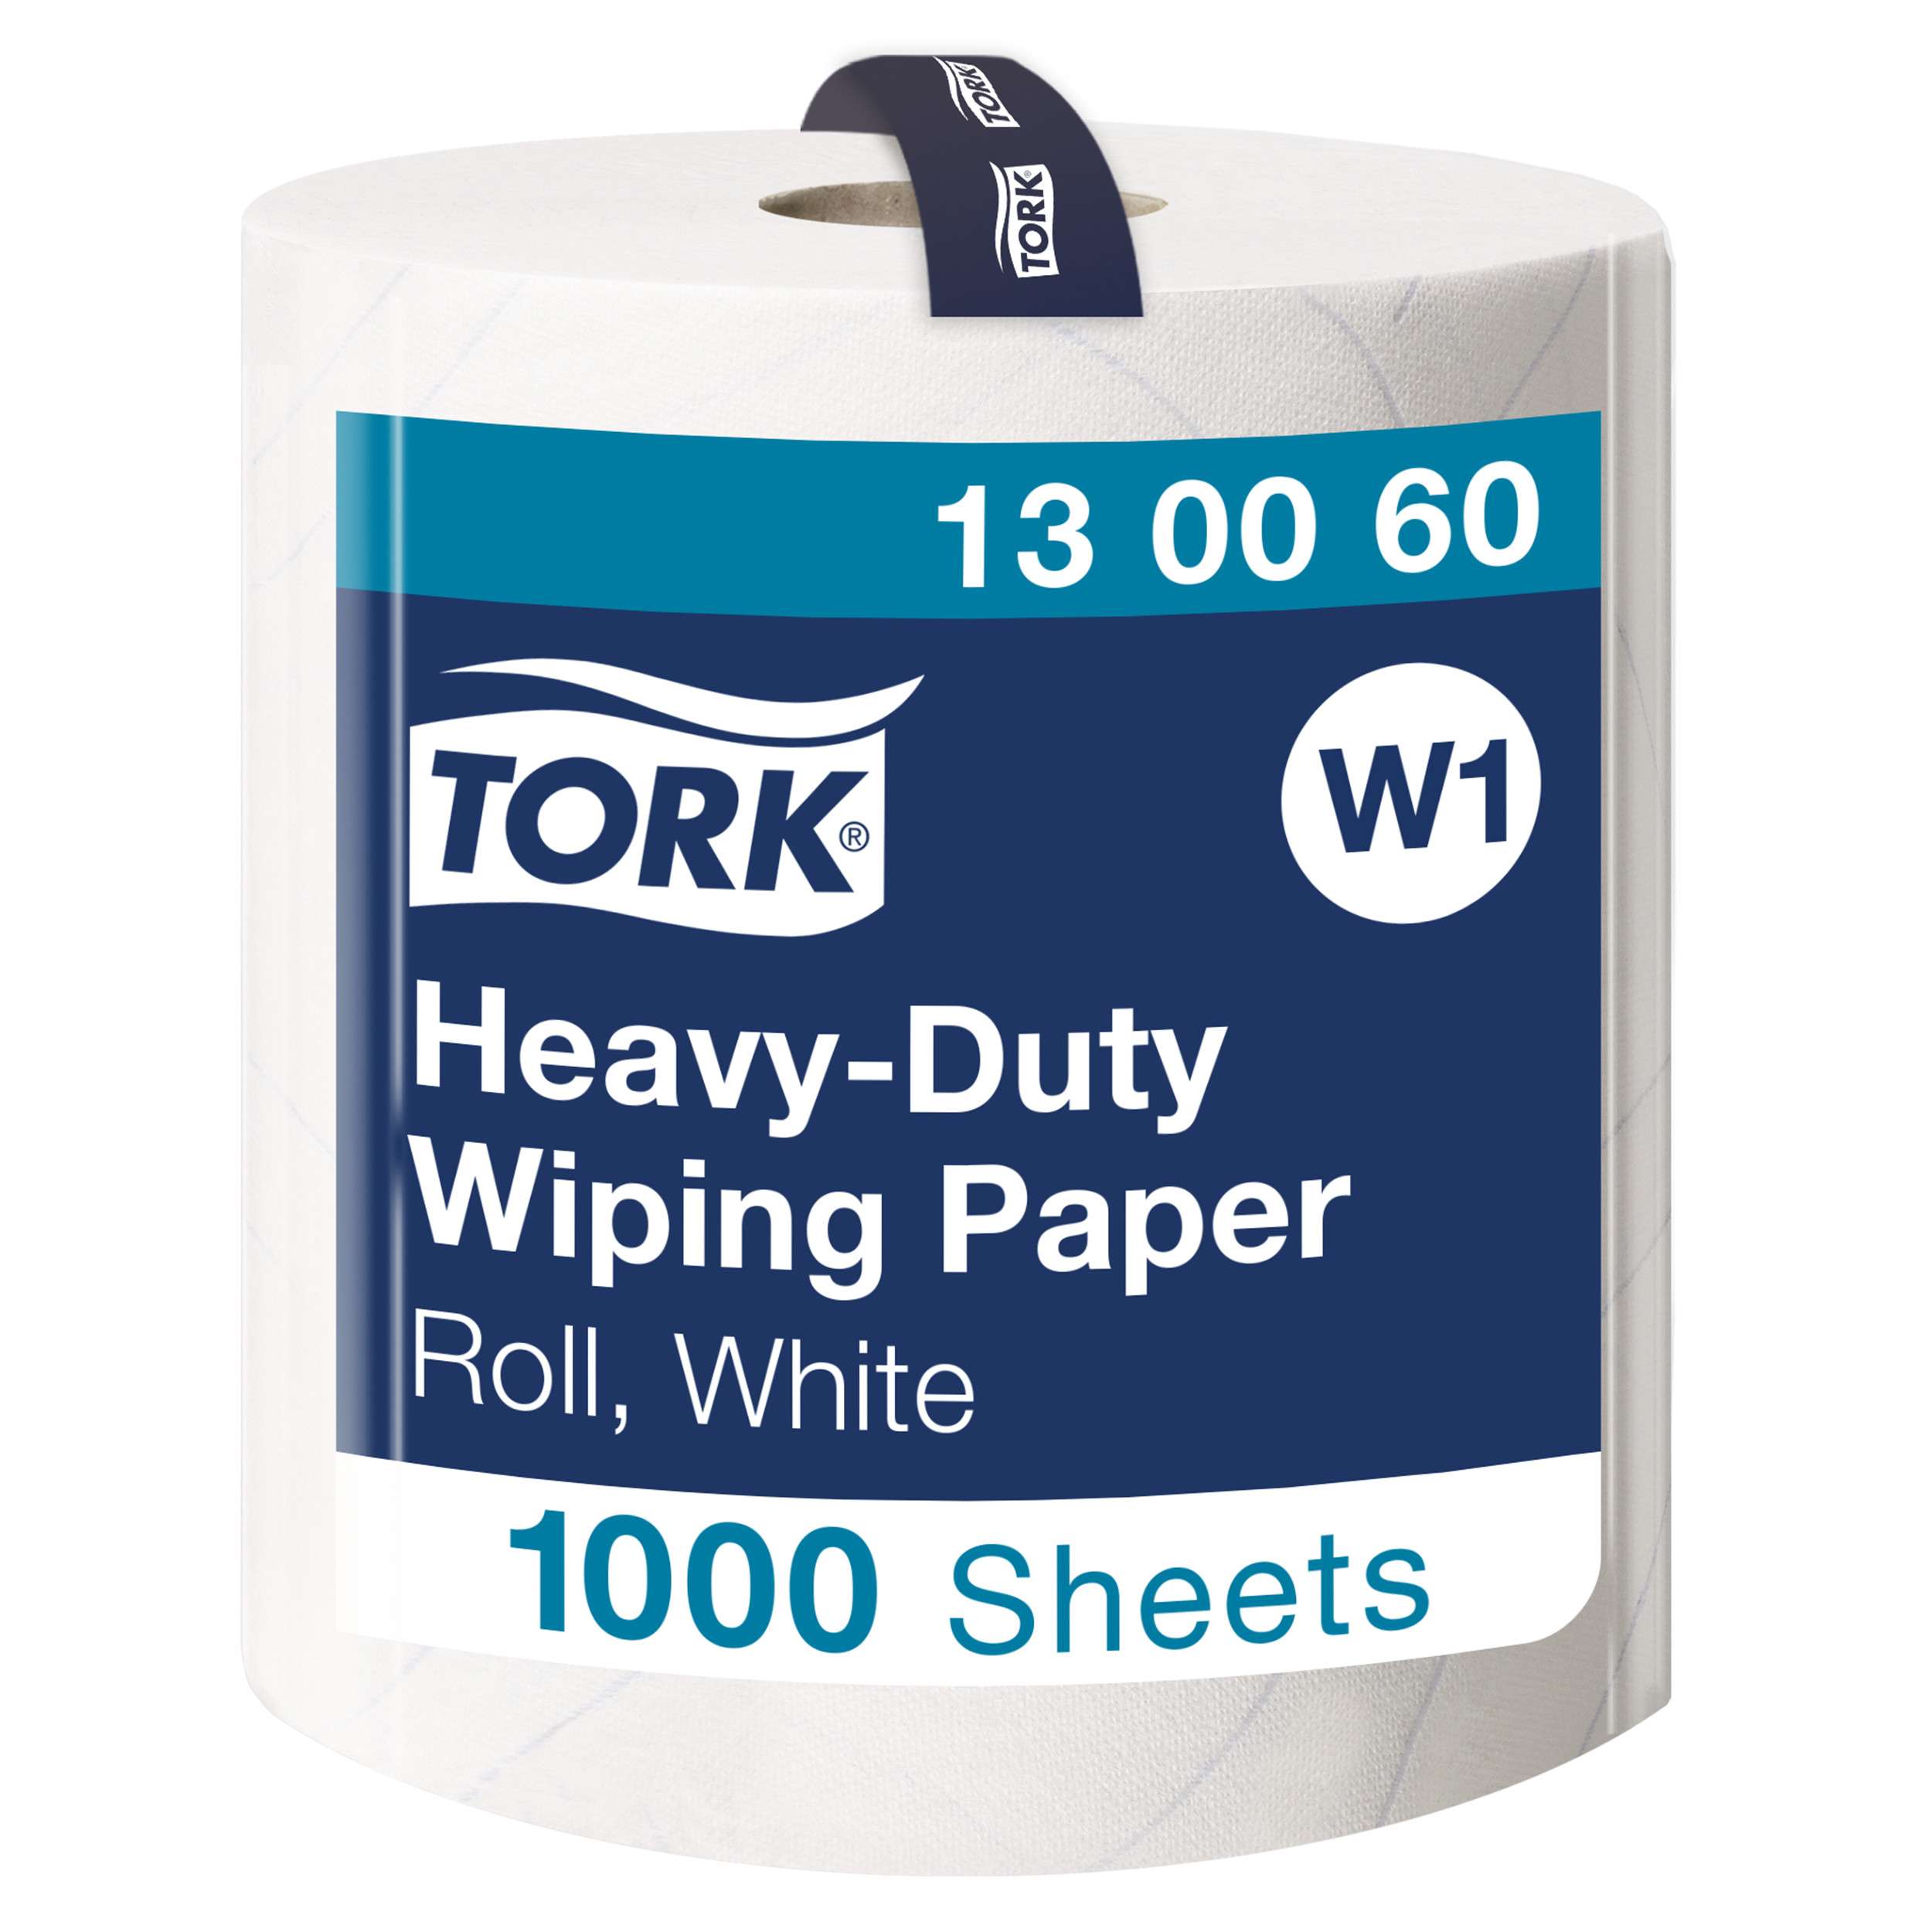 Tork Heavy-Duty Wiping Paper White W1